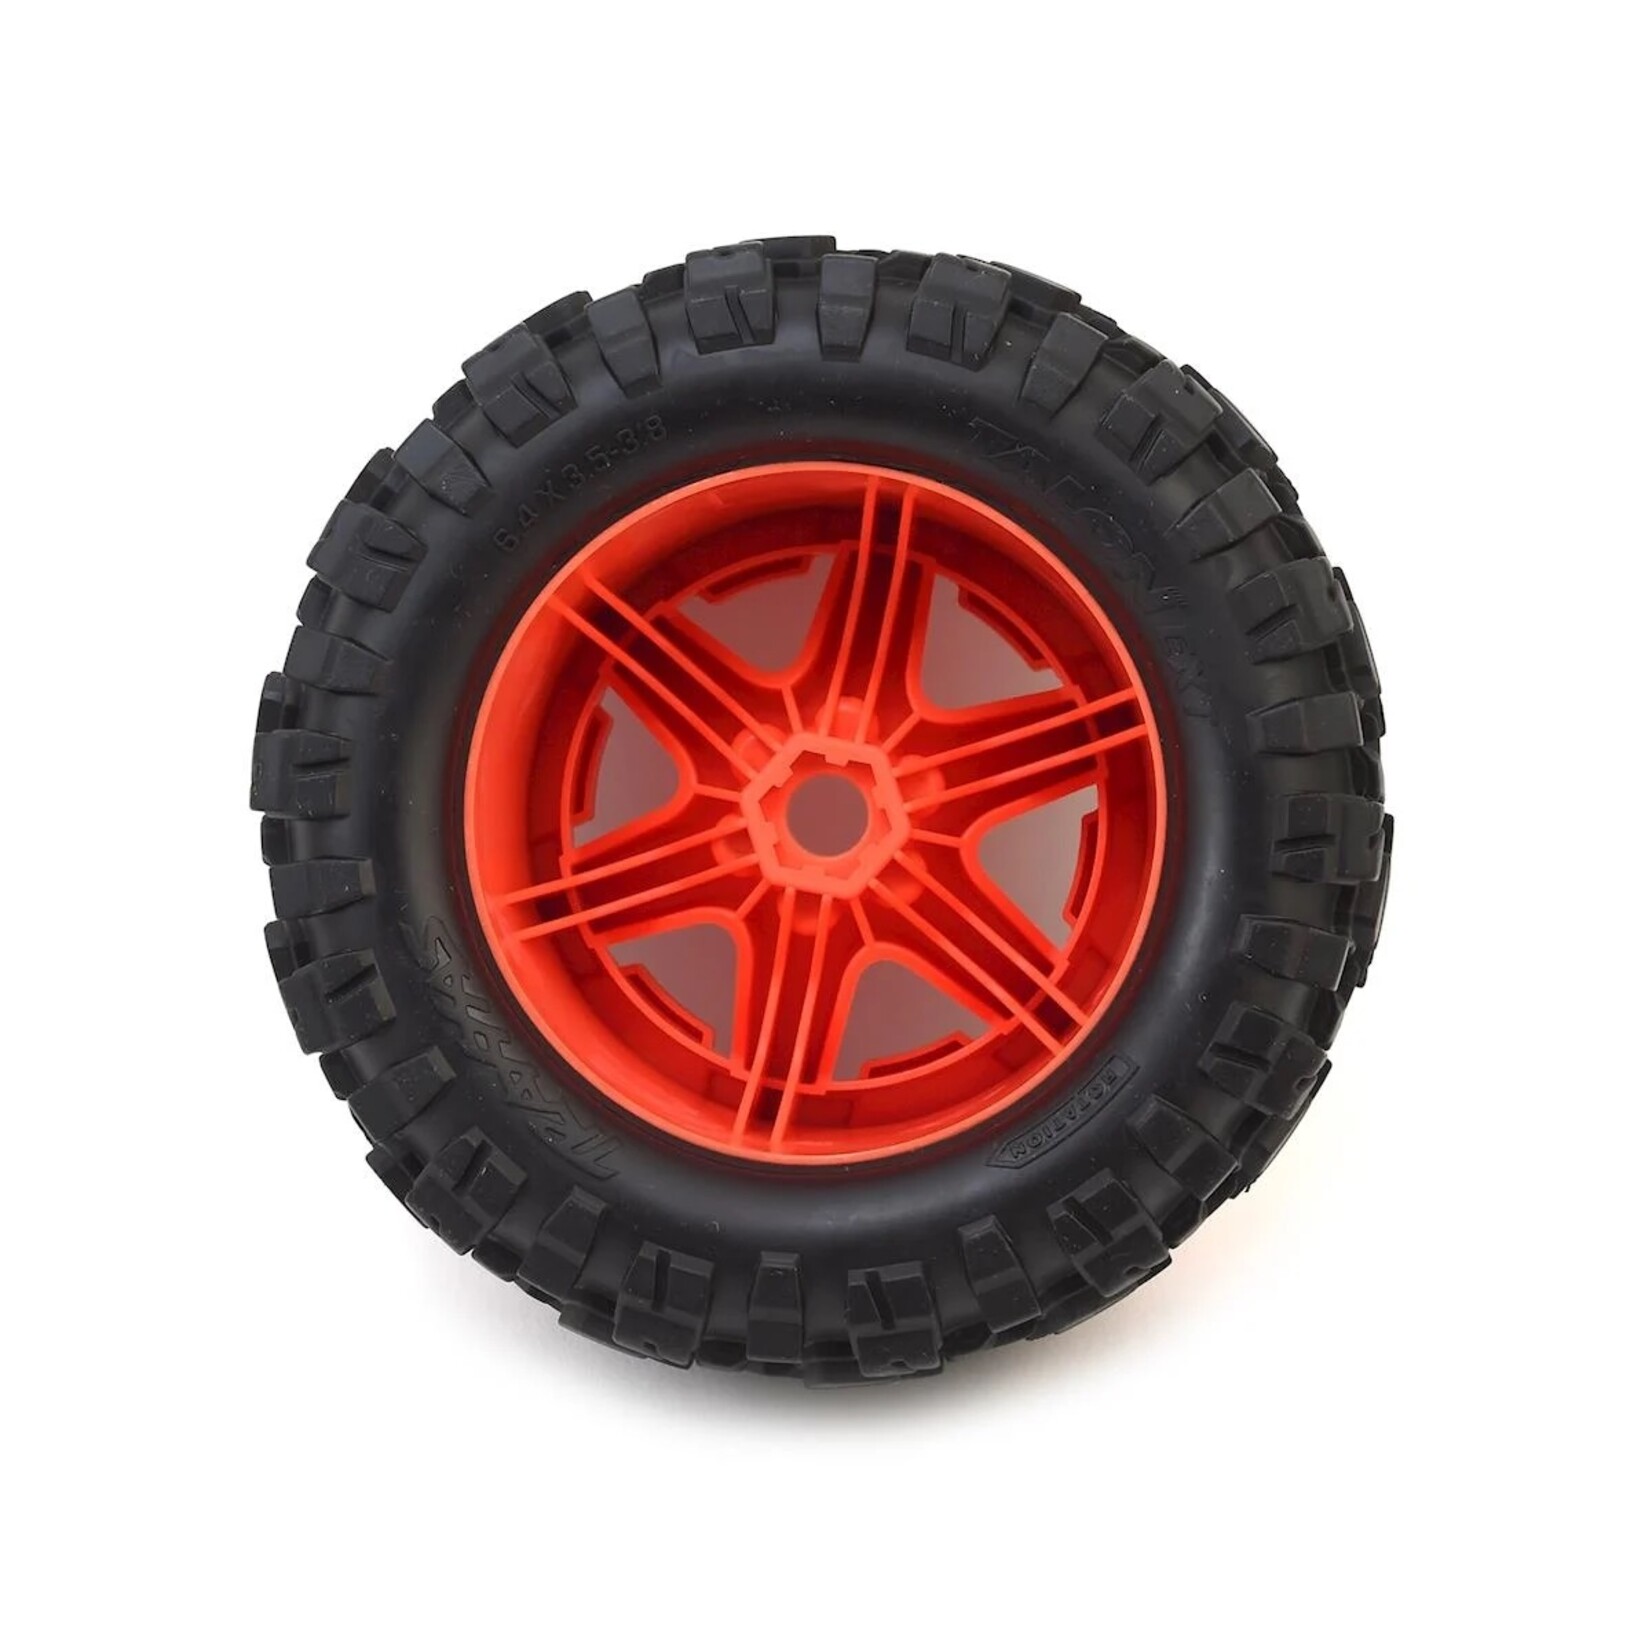 Traxxas Traxxas Talon EXT Tires 3.8" Pre-Mounted Monster Truck Tires (2) (Orange) #8672A